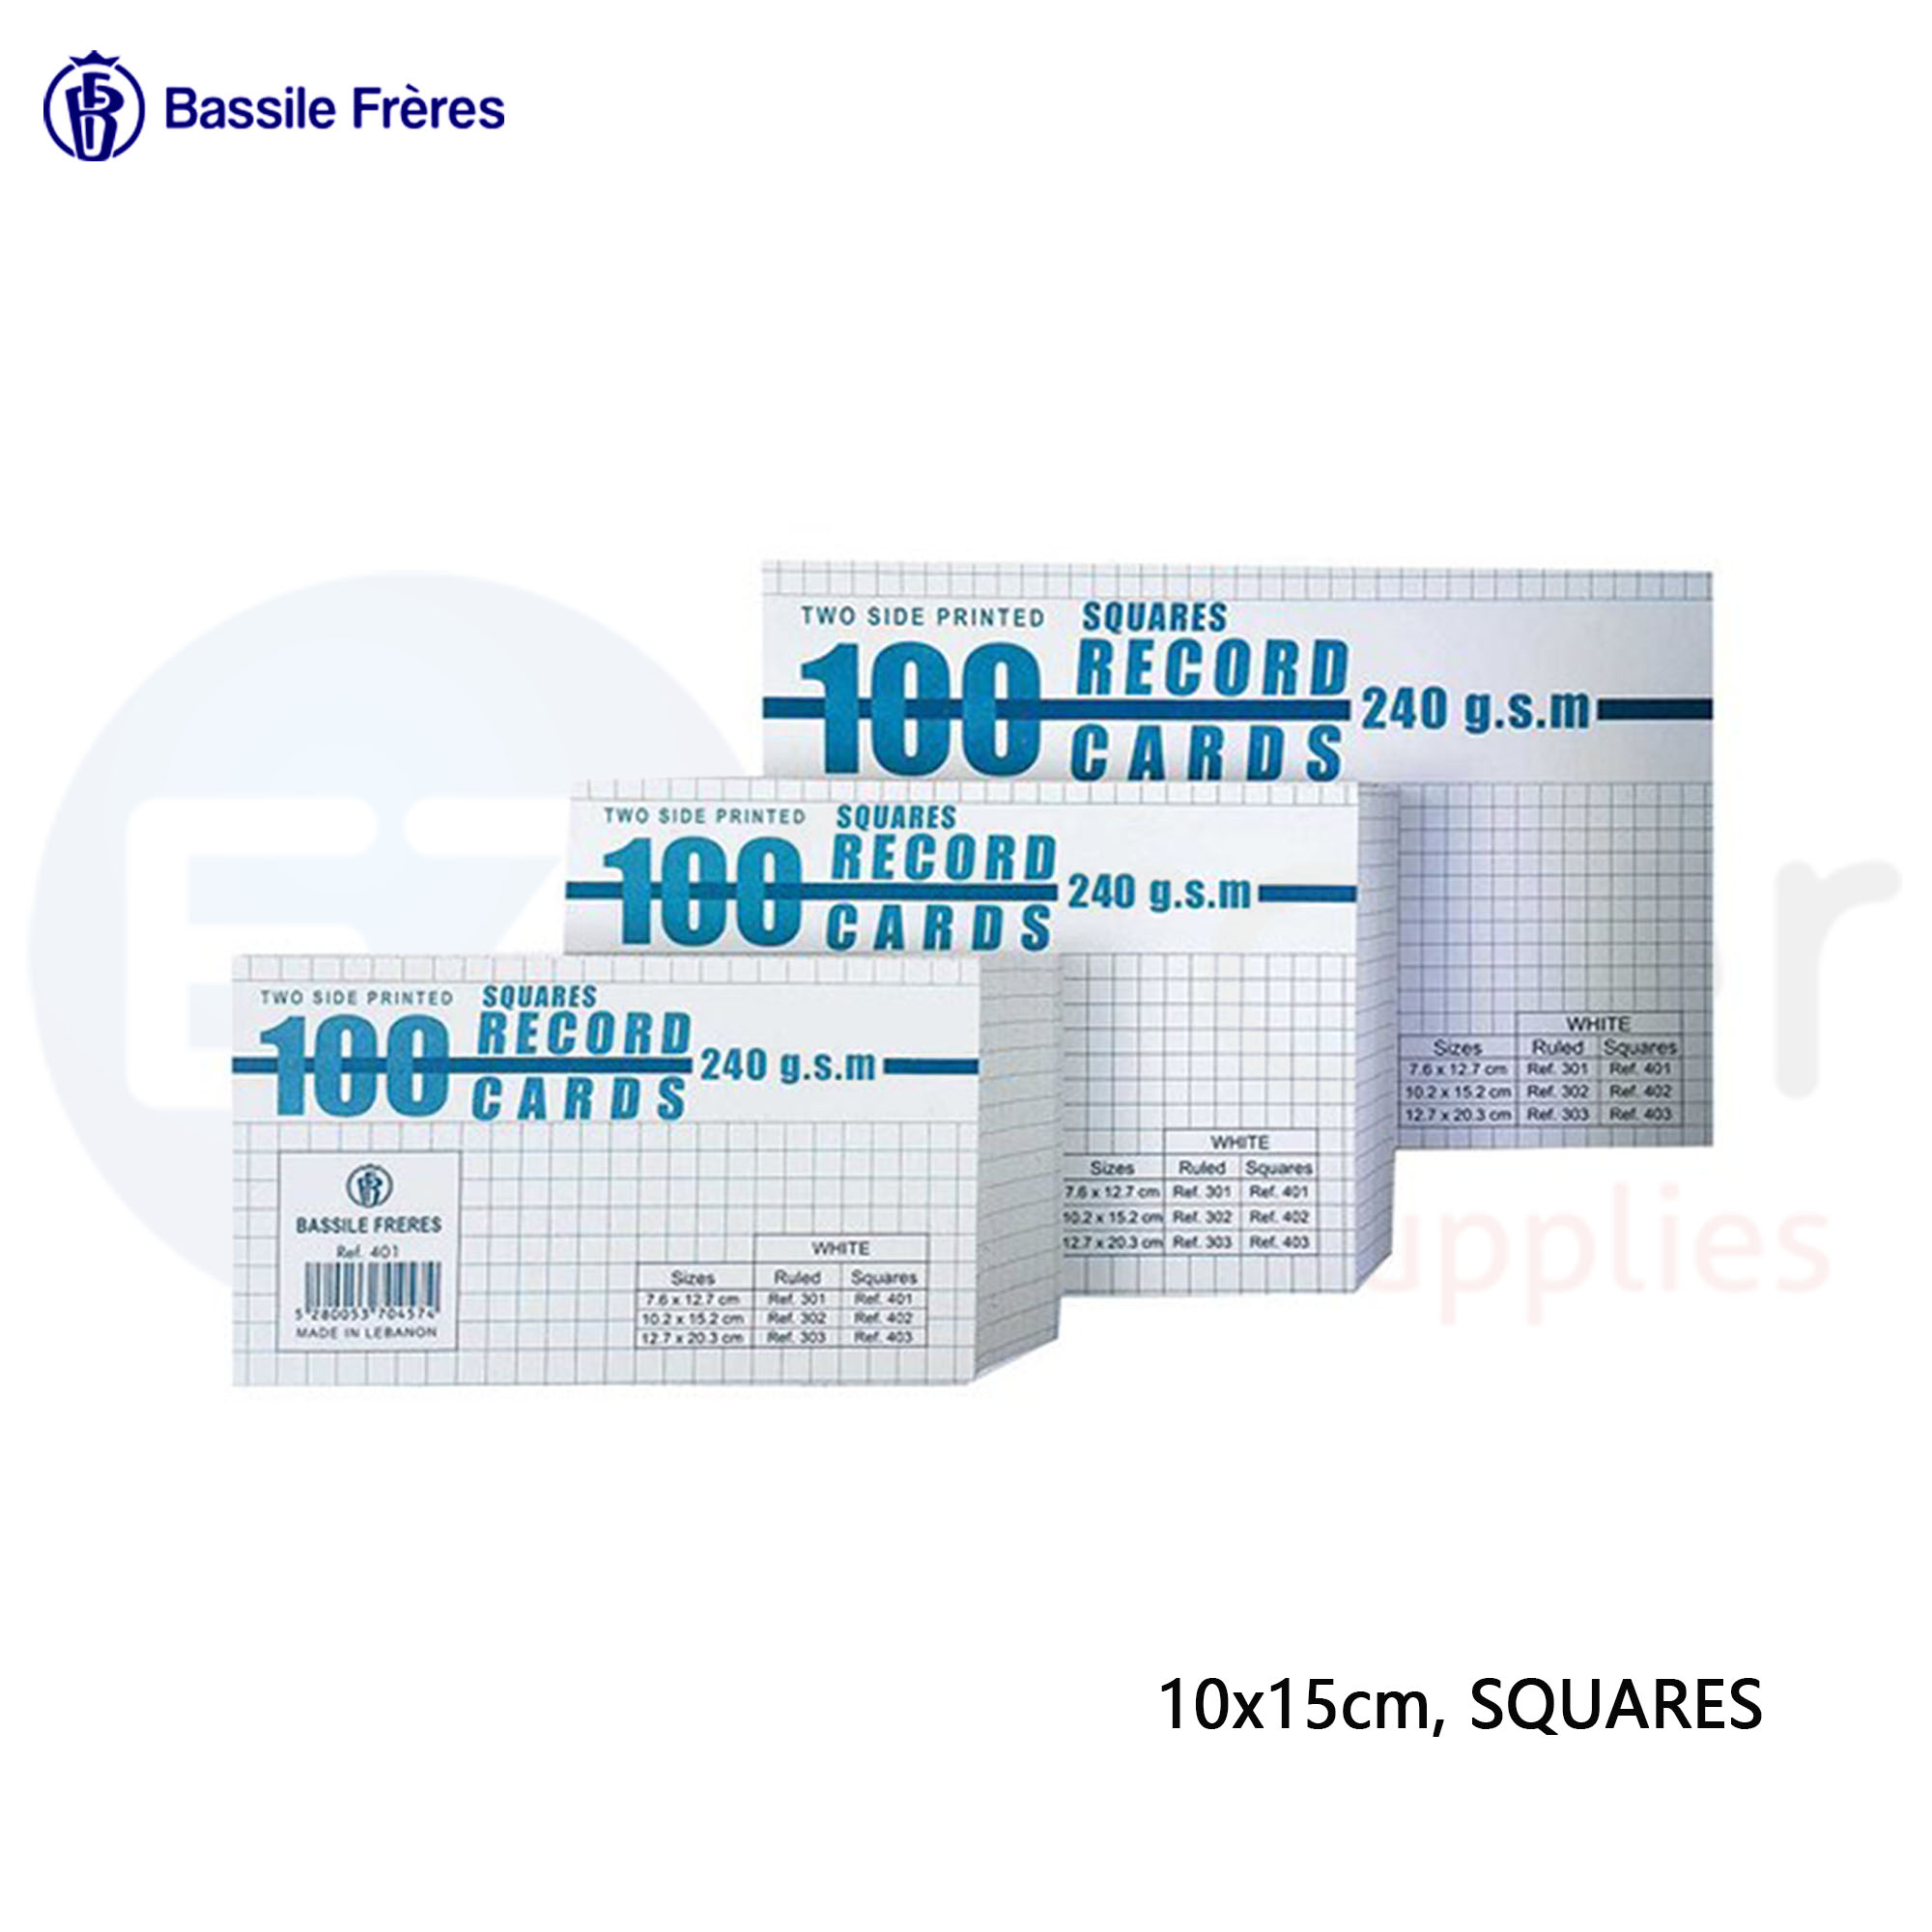 +Index card 10x15cm squares